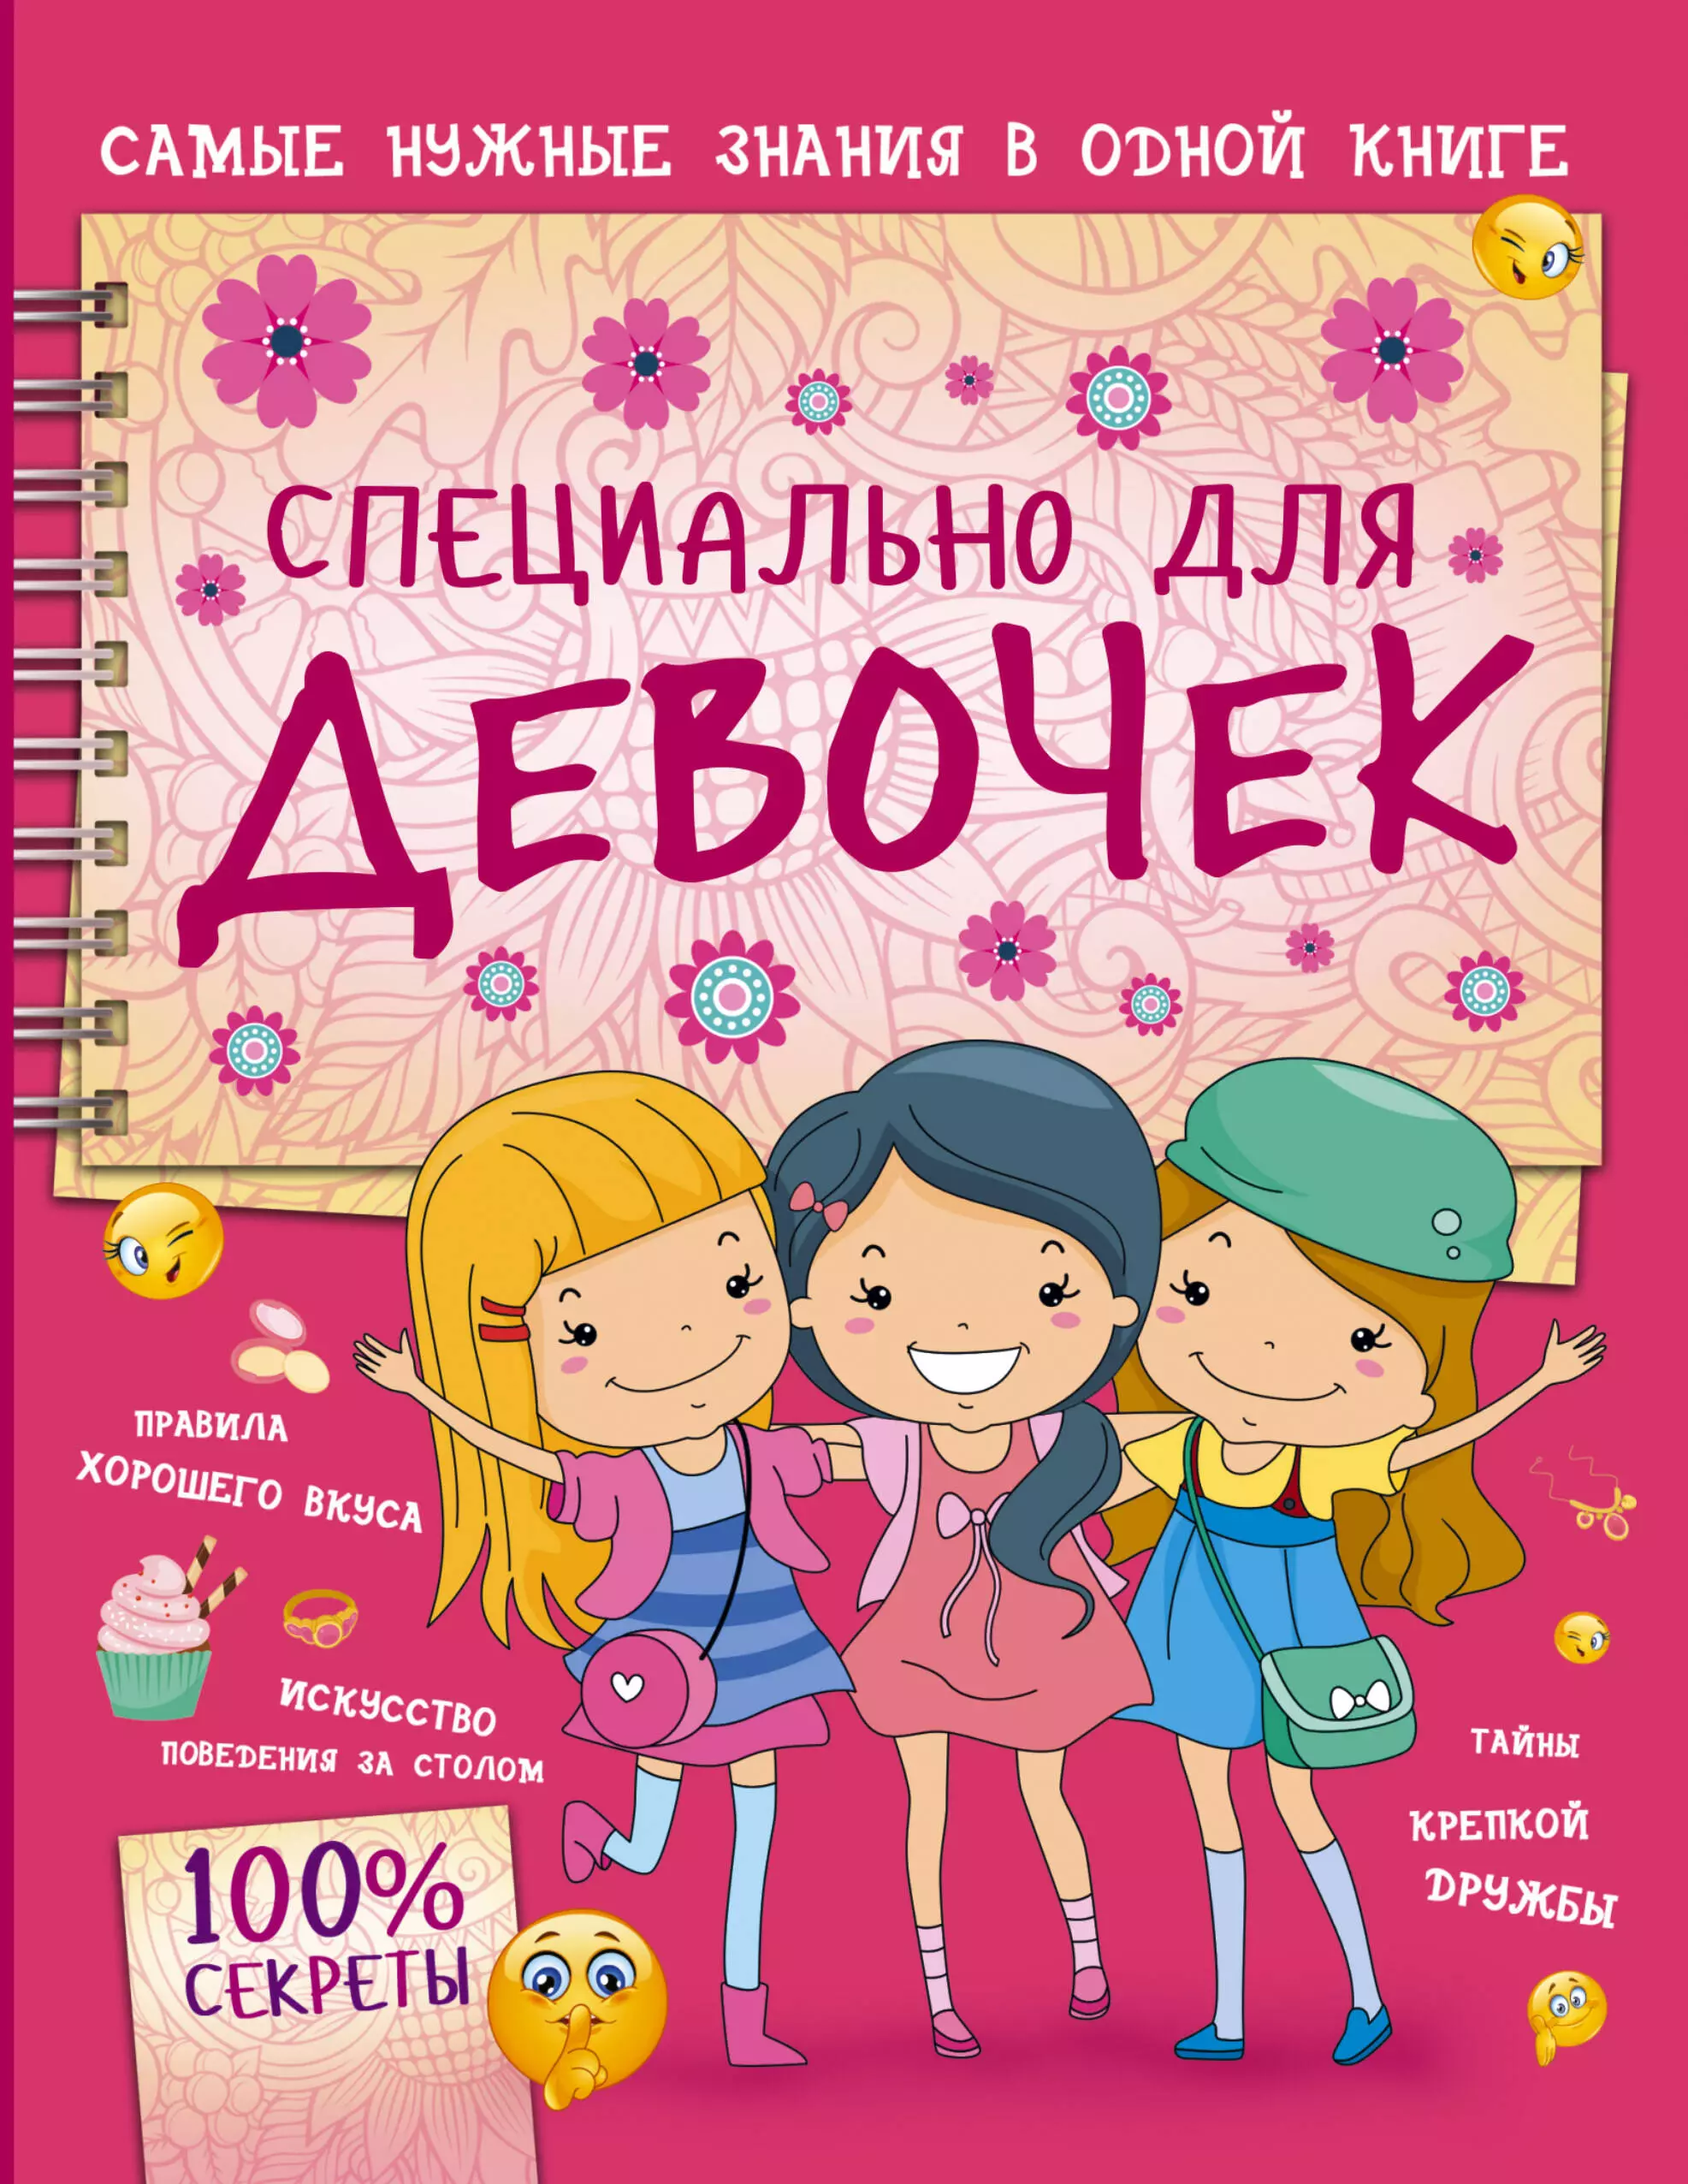 Интересные книги для девочки 8 лет. Книга для девочек. Интересные книги для девочек. Девочка с книжкой. Популярные книги для девочек.